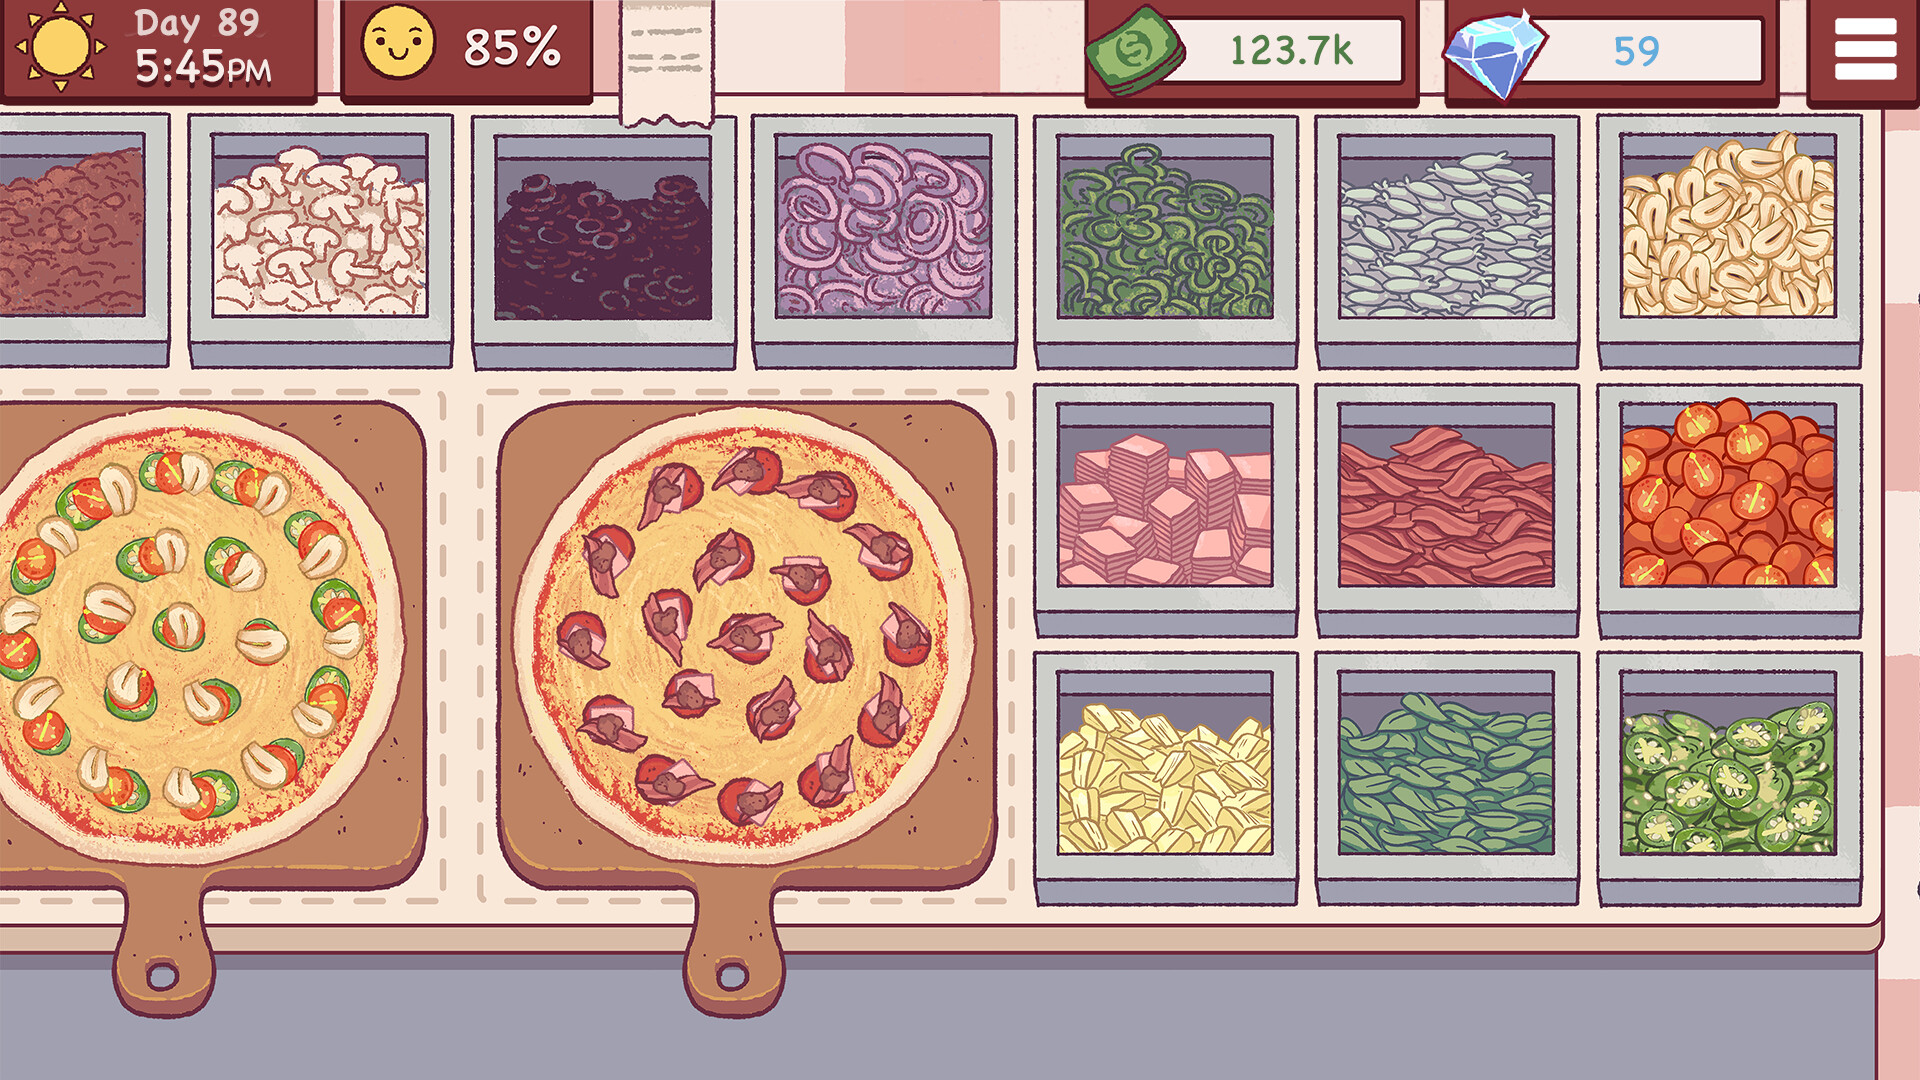 пицца игра скачать бесплатно на андроид фото 23